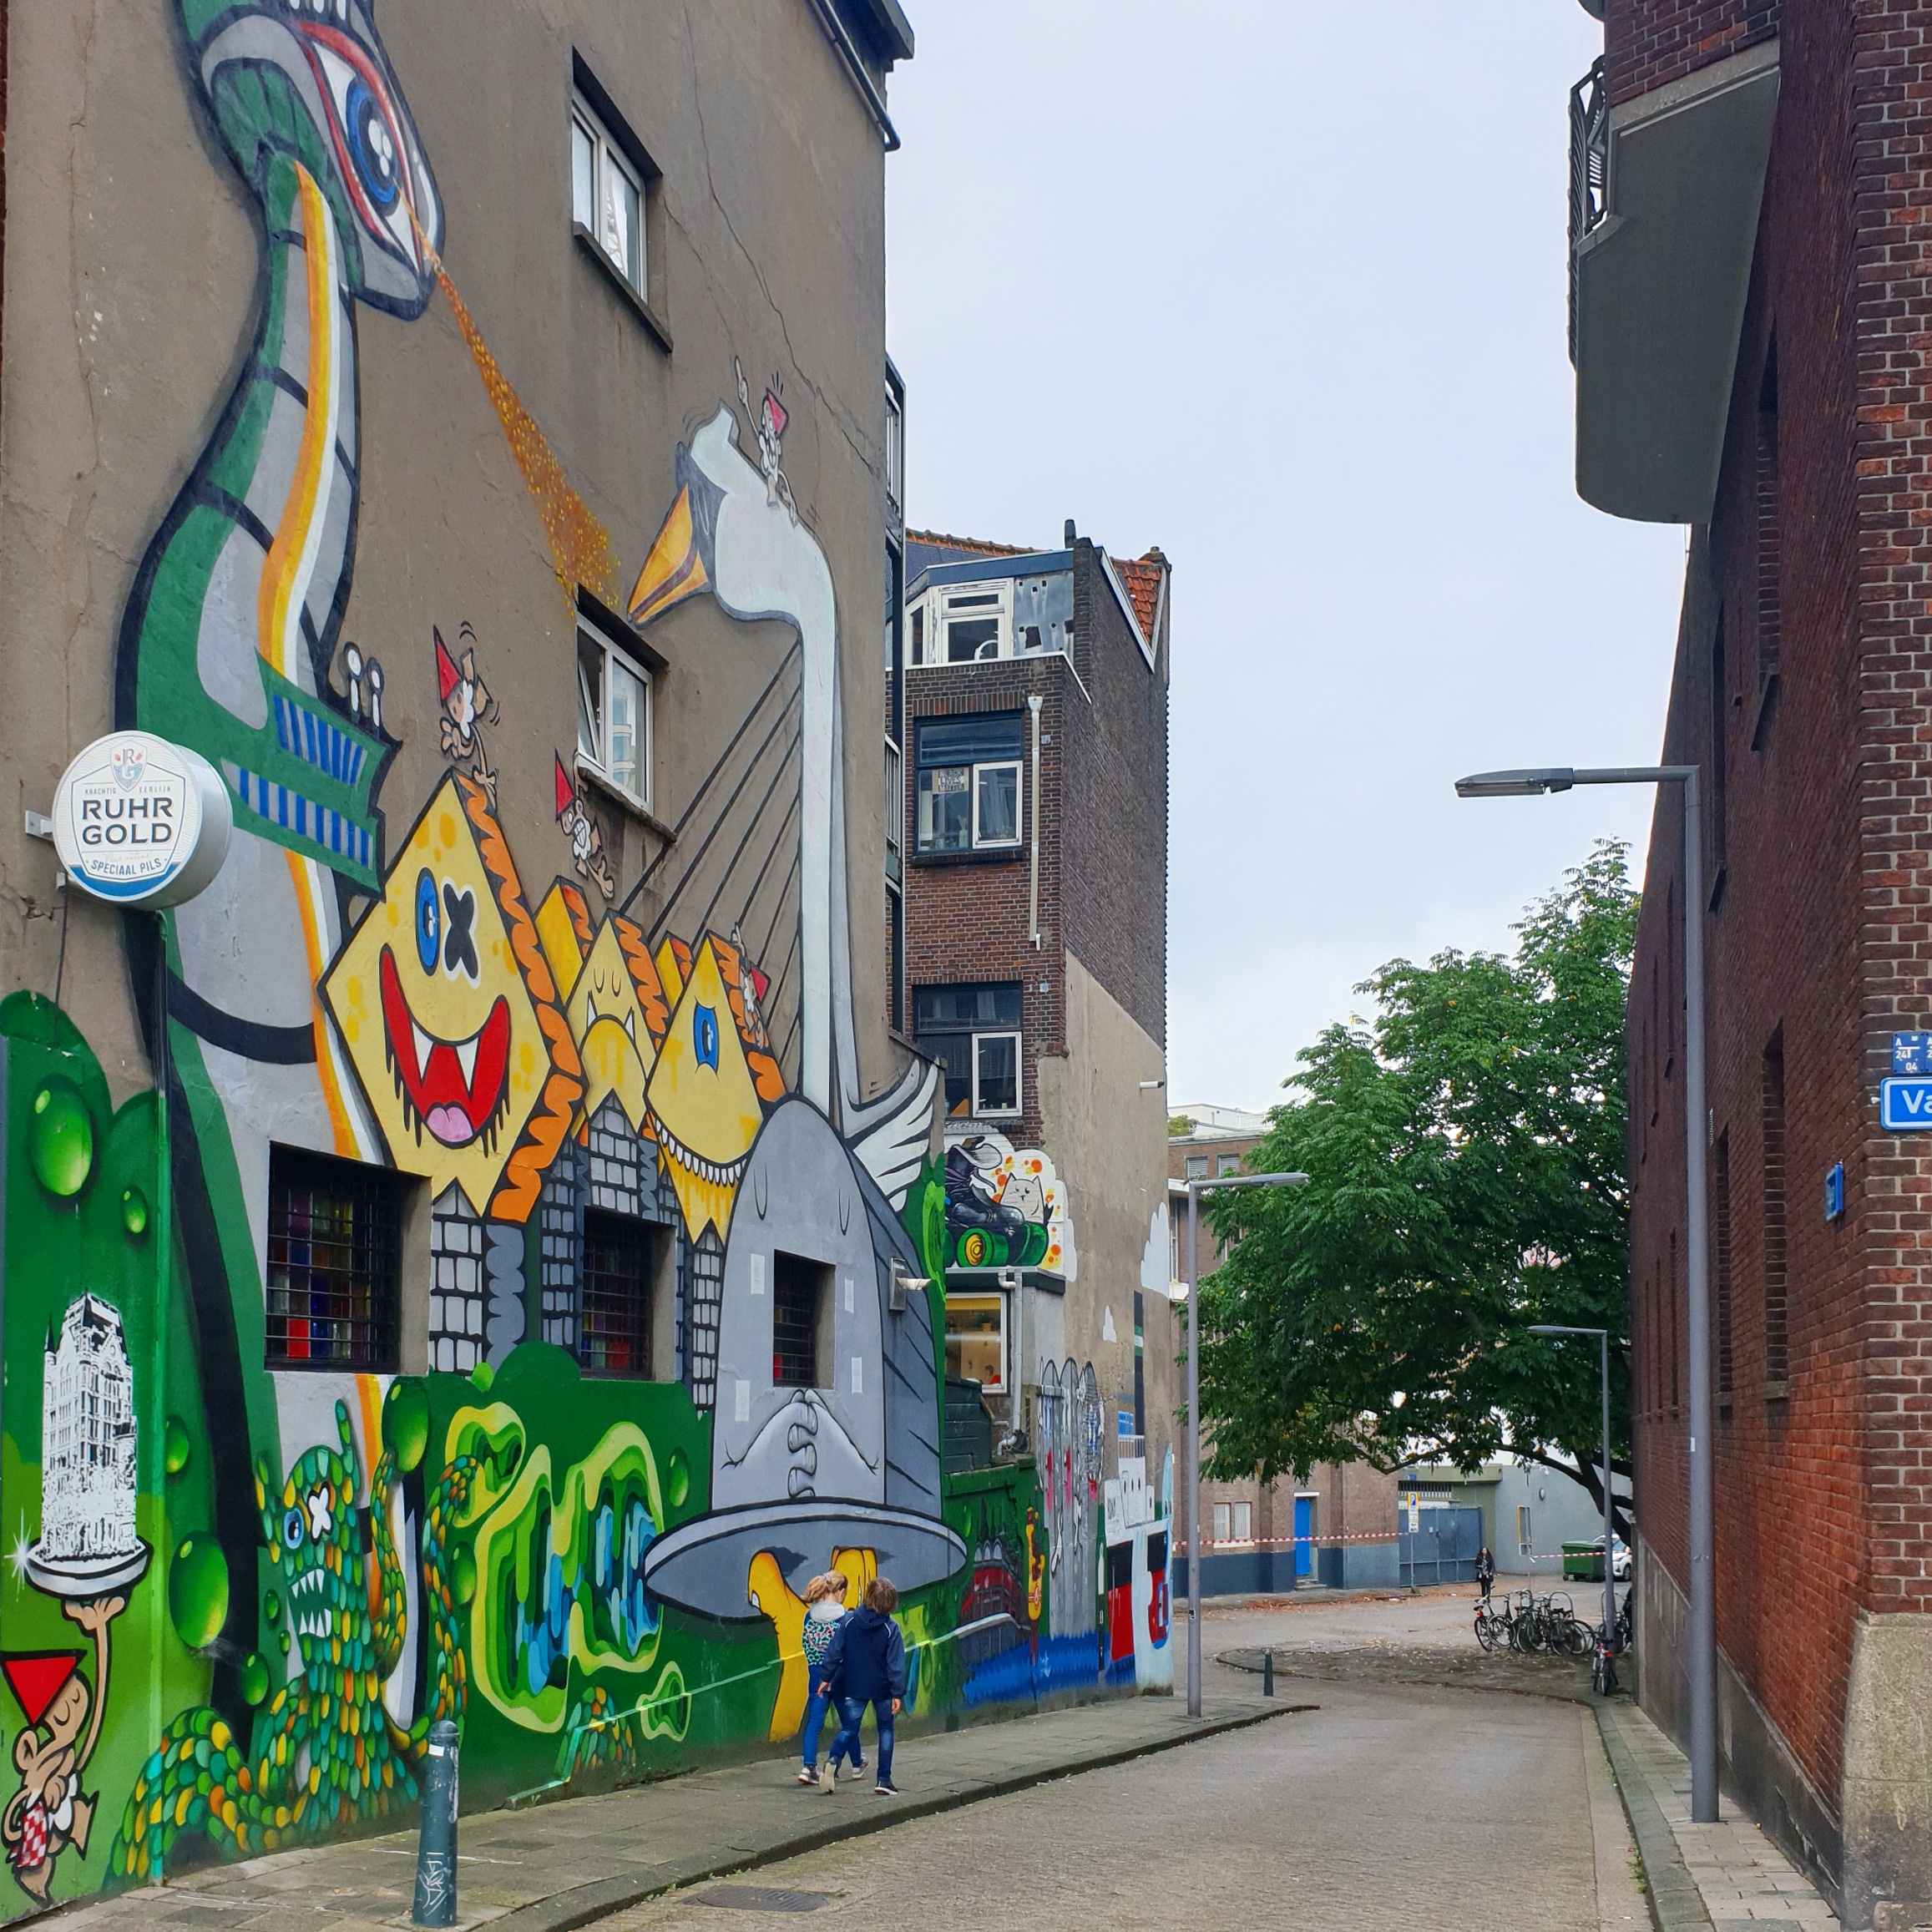 De leukste street art routes voor kinderen en tieners. Wij zijn gek op street art routes. Het is een leuke creatieve manier om te wandelen met kids. En er komen steeds meer leuke street art routes bij. In dit artikel verzamelen we de leukste street art routes voor kinderen en tieners. Zoals hier in Rotterdam.